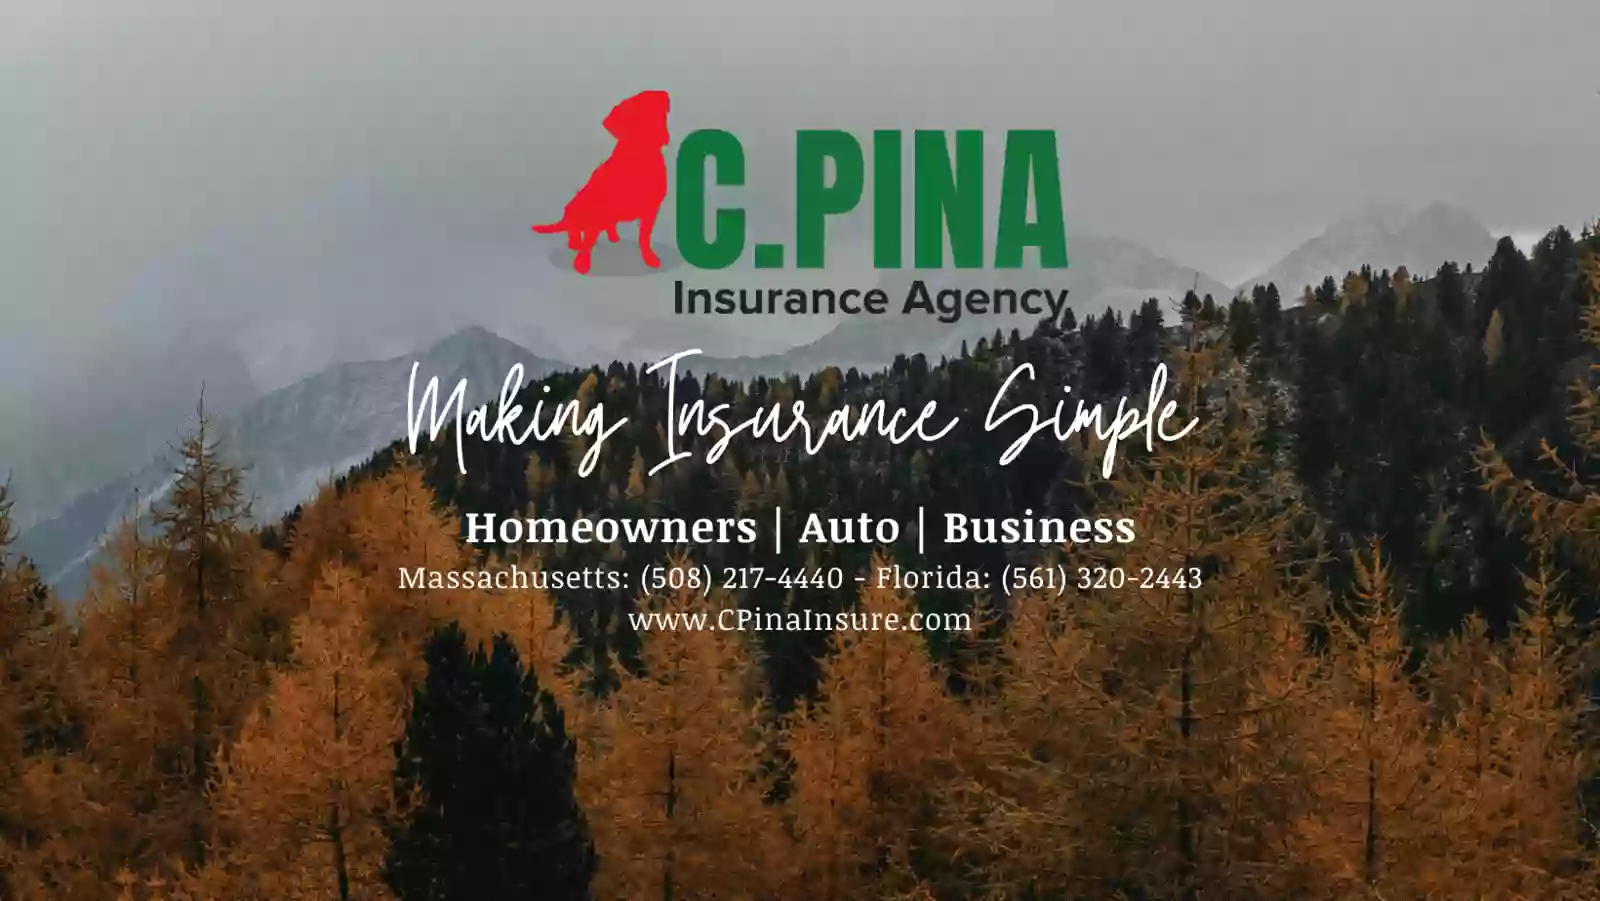 C Pina Insurance Agency